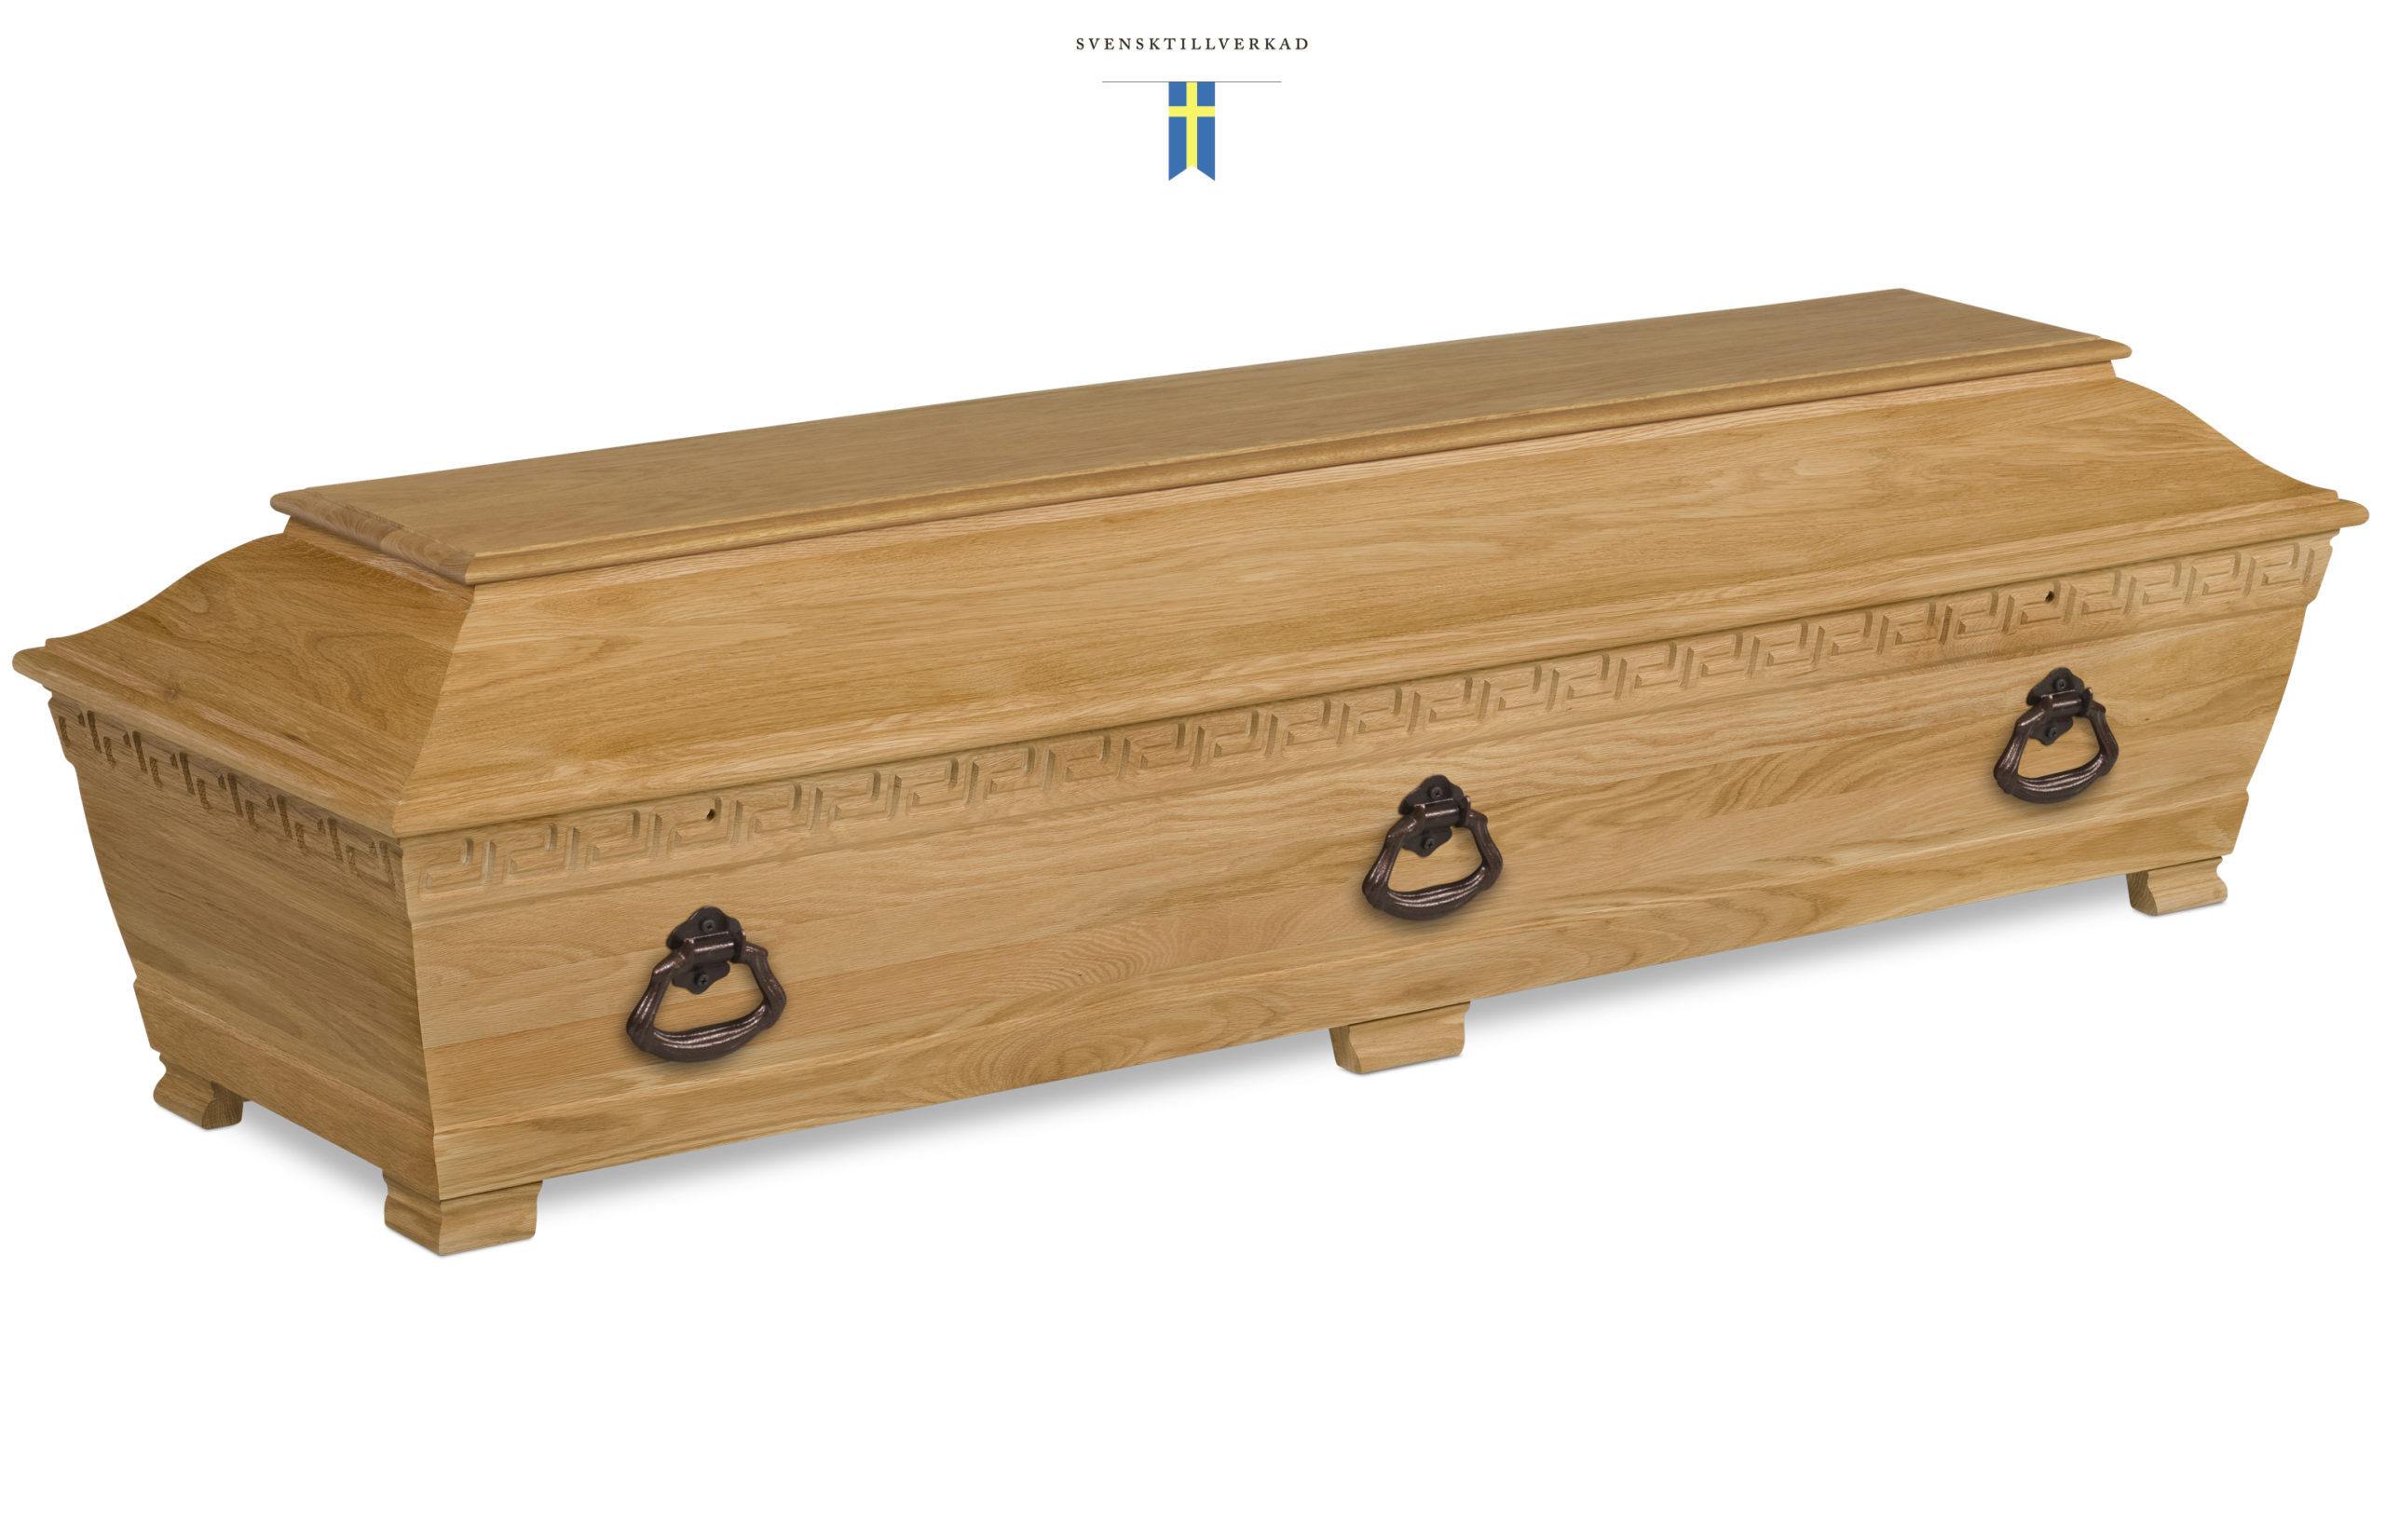 Kista "Classic Ek" Evighetens Vila Begravningsbyrå